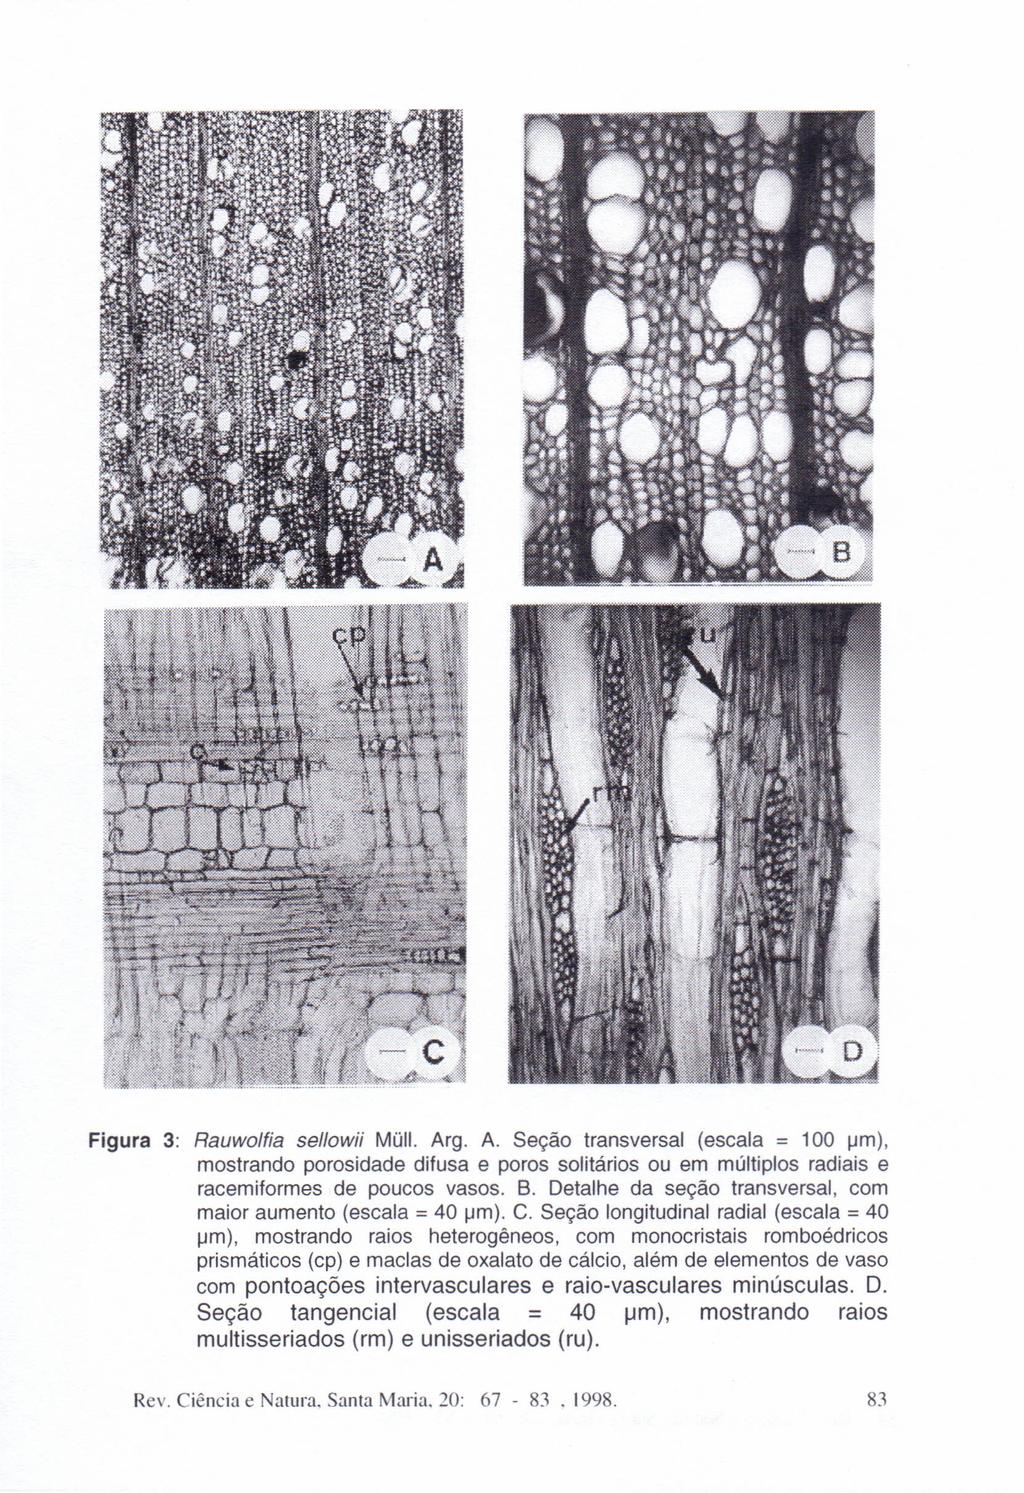 Figura 3: Rauwolfia sellowii Müll. Arg. A. Seção transversal (escala = 100 um), mostrando porosidade difusa e poros solitários ou em múltiplos radiais e racemiformes de poucos vasos. B.